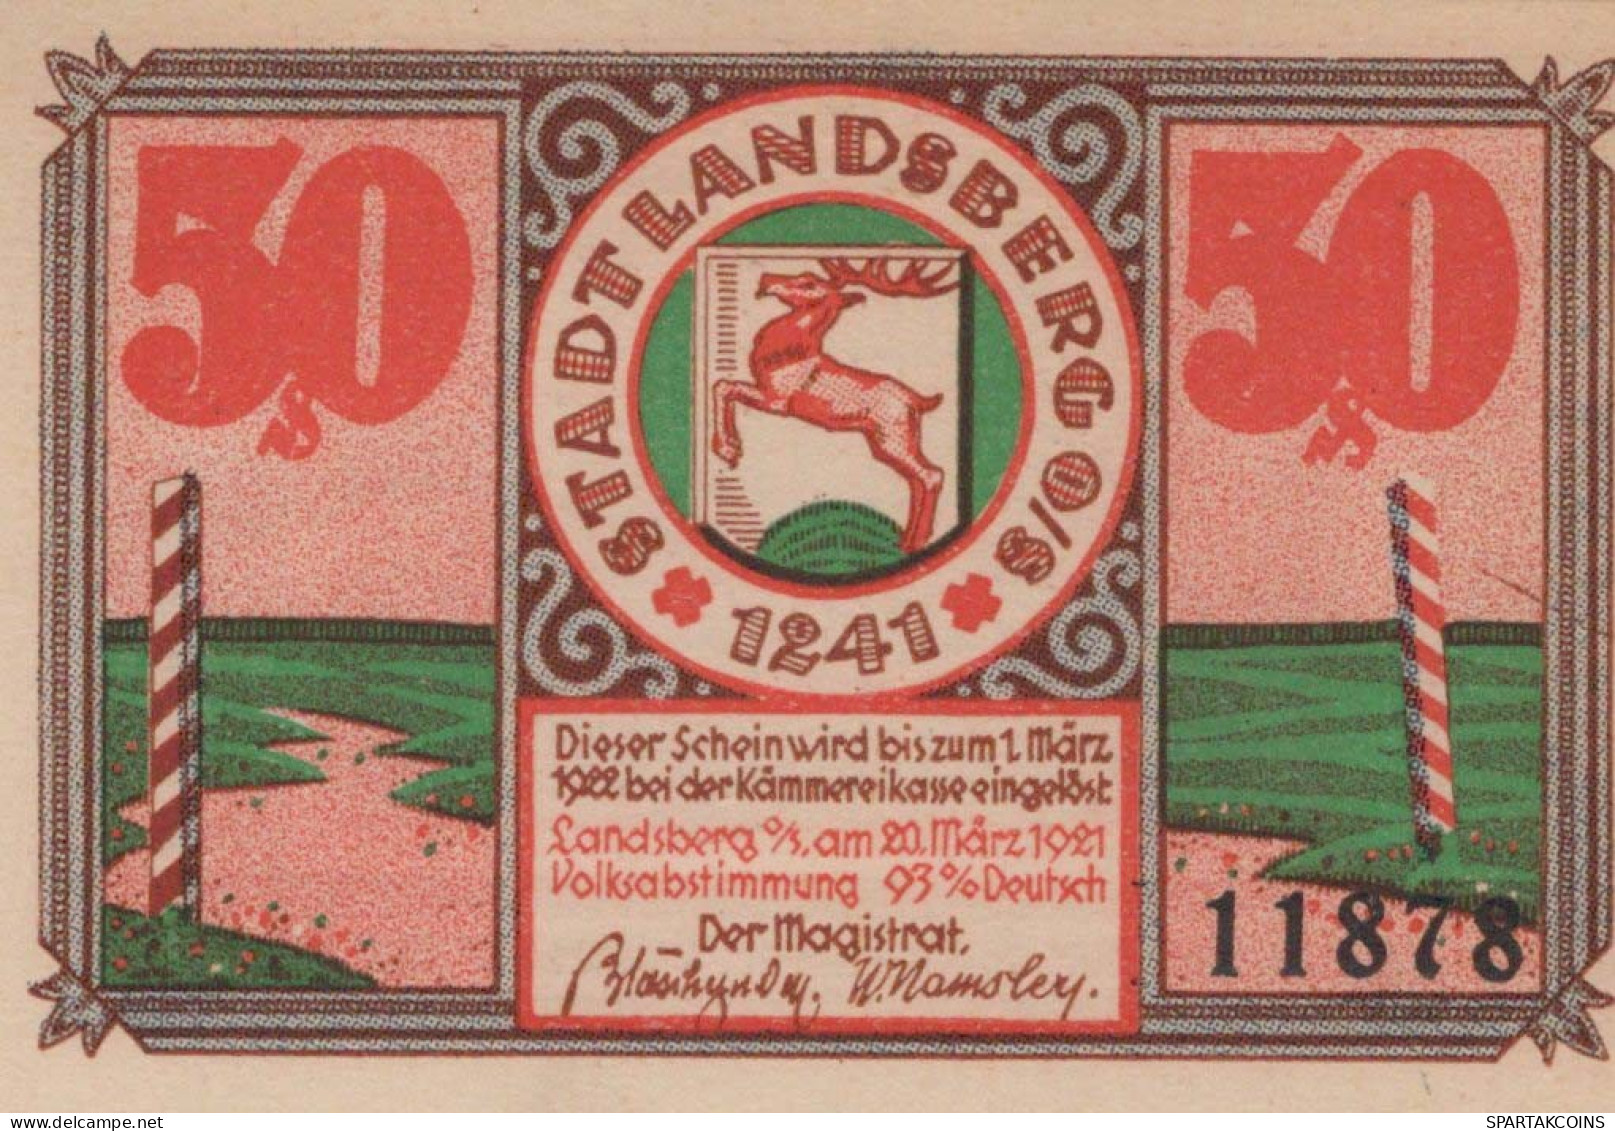 50 PFENNIG 1922 Stadt LANDSBERG OBERSCHLESIEN UNC DEUTSCHLAND #PB928 - [11] Local Banknote Issues